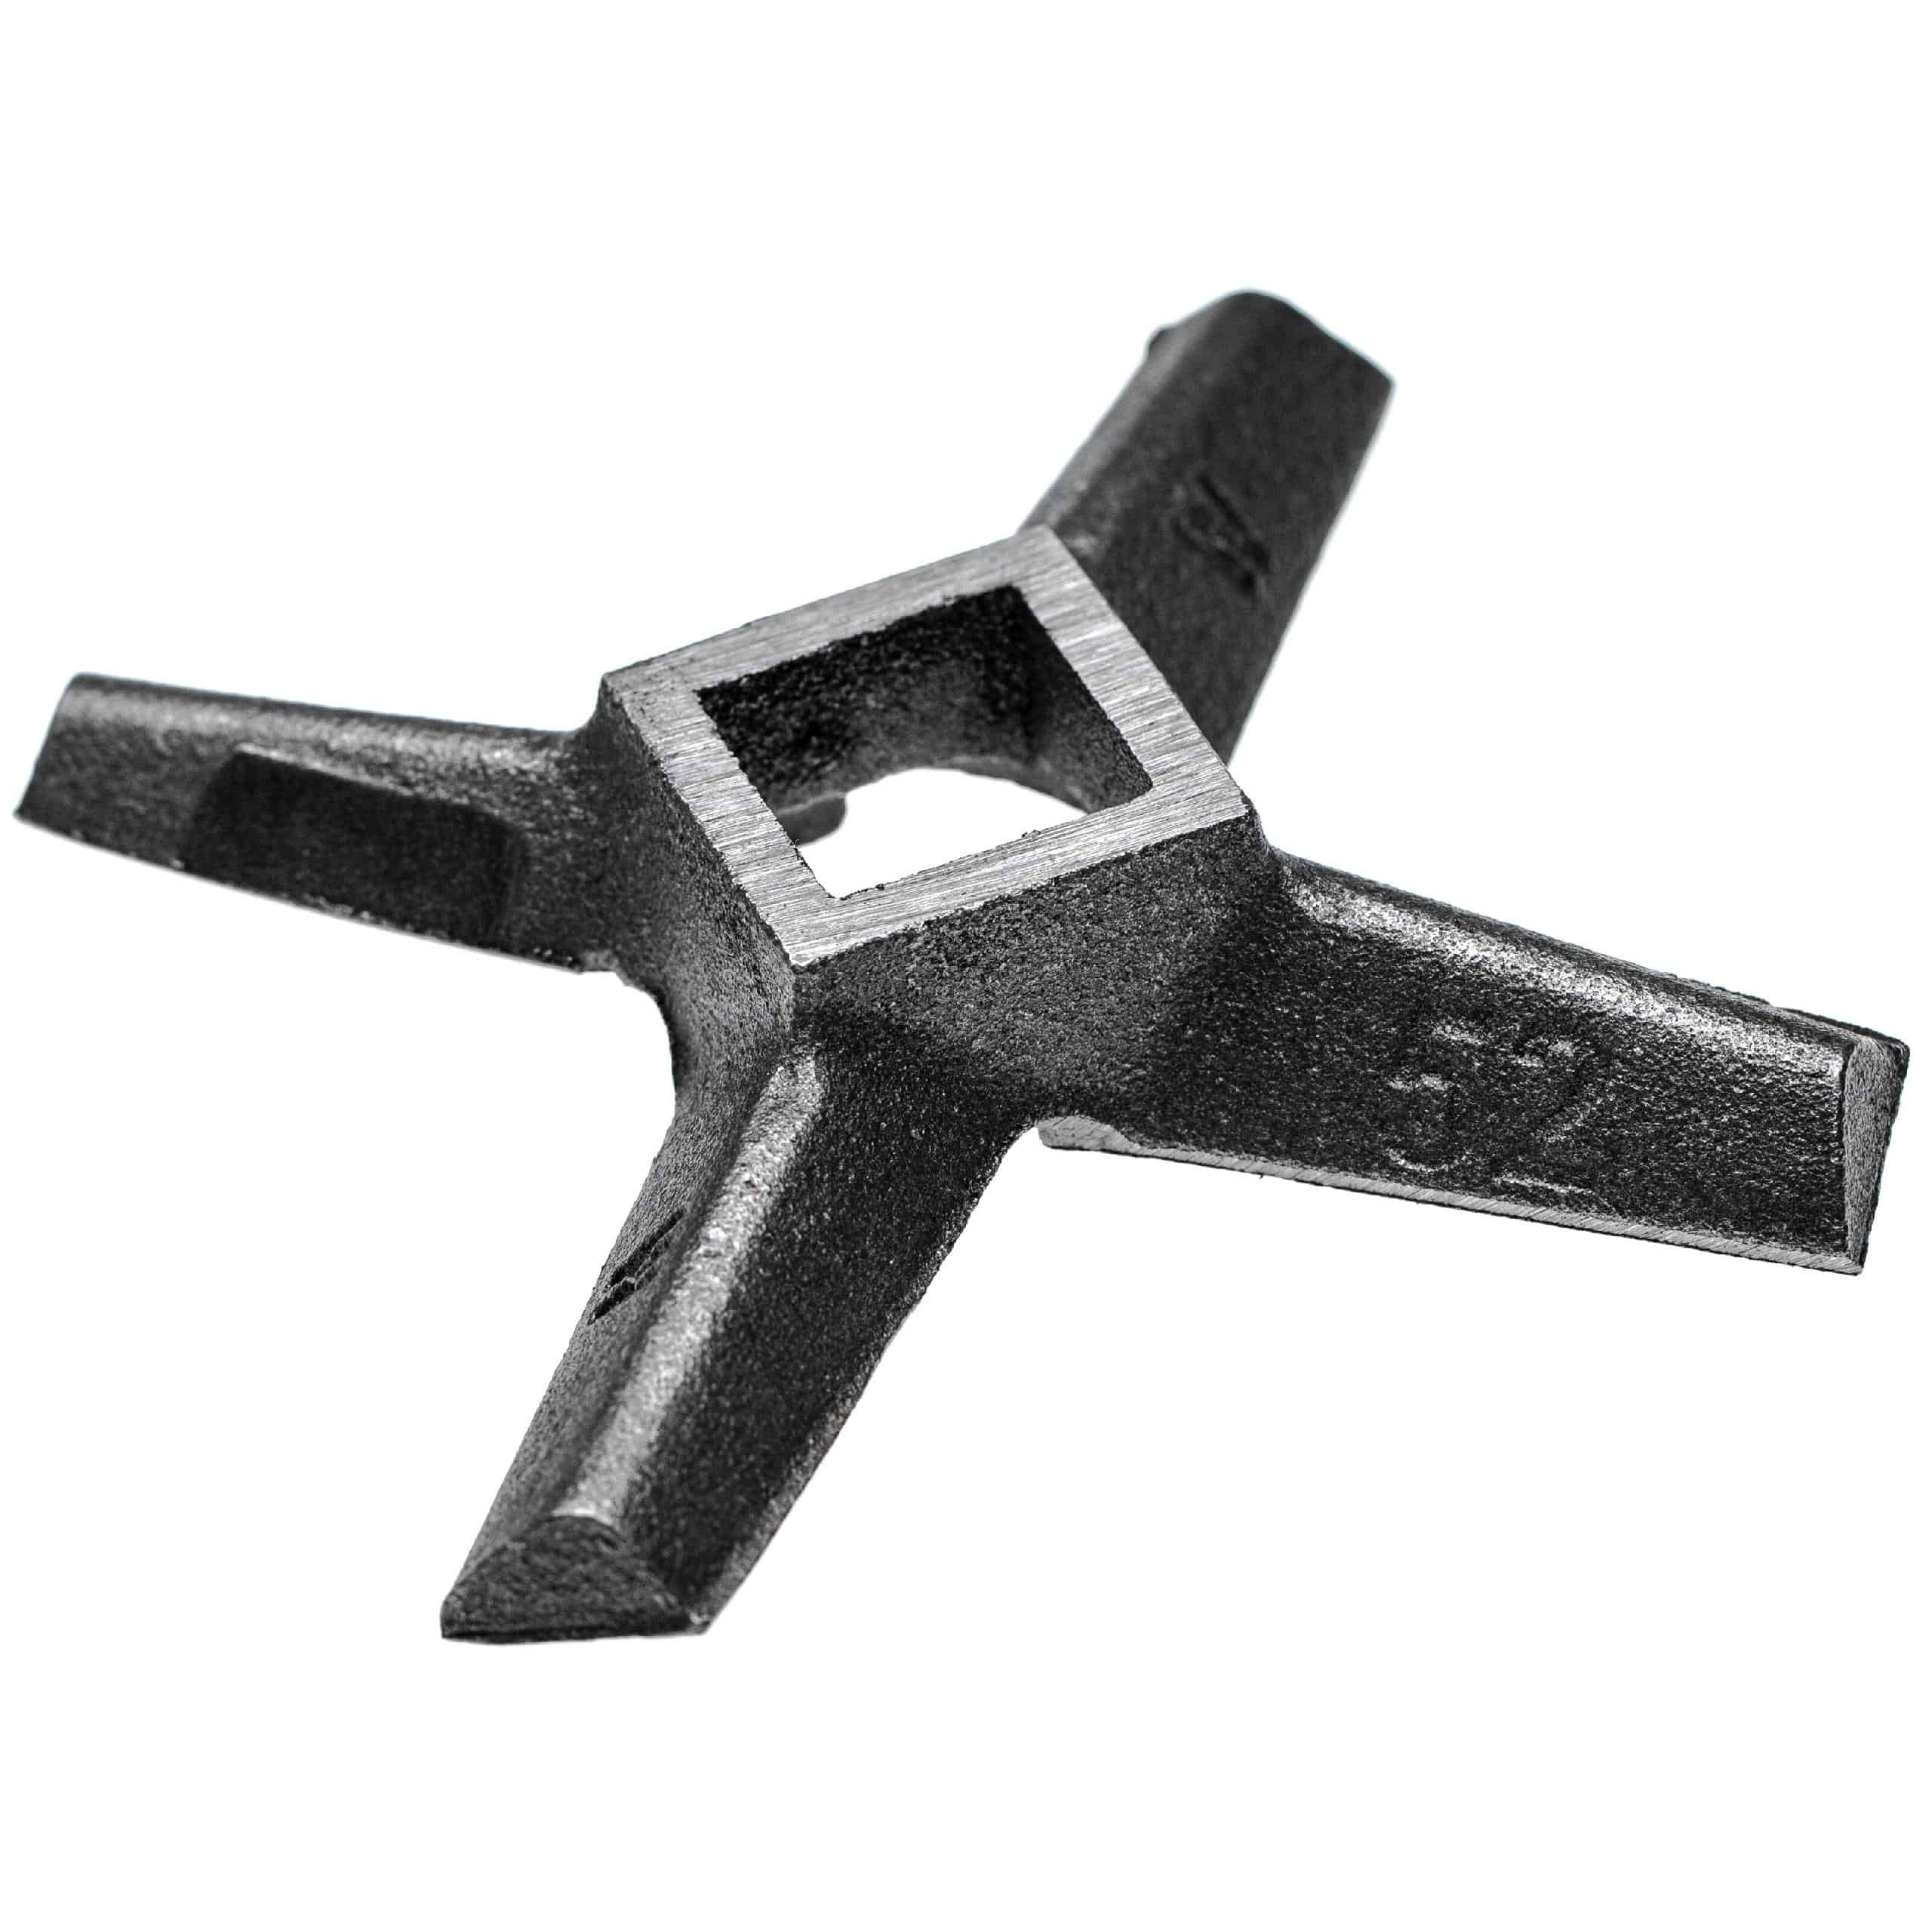 Cuchilla en cruz nº. 52 para picadoras por ej. compatible con ADE, Caso, Fama - cuadrado 23,3 x 23,3 mm